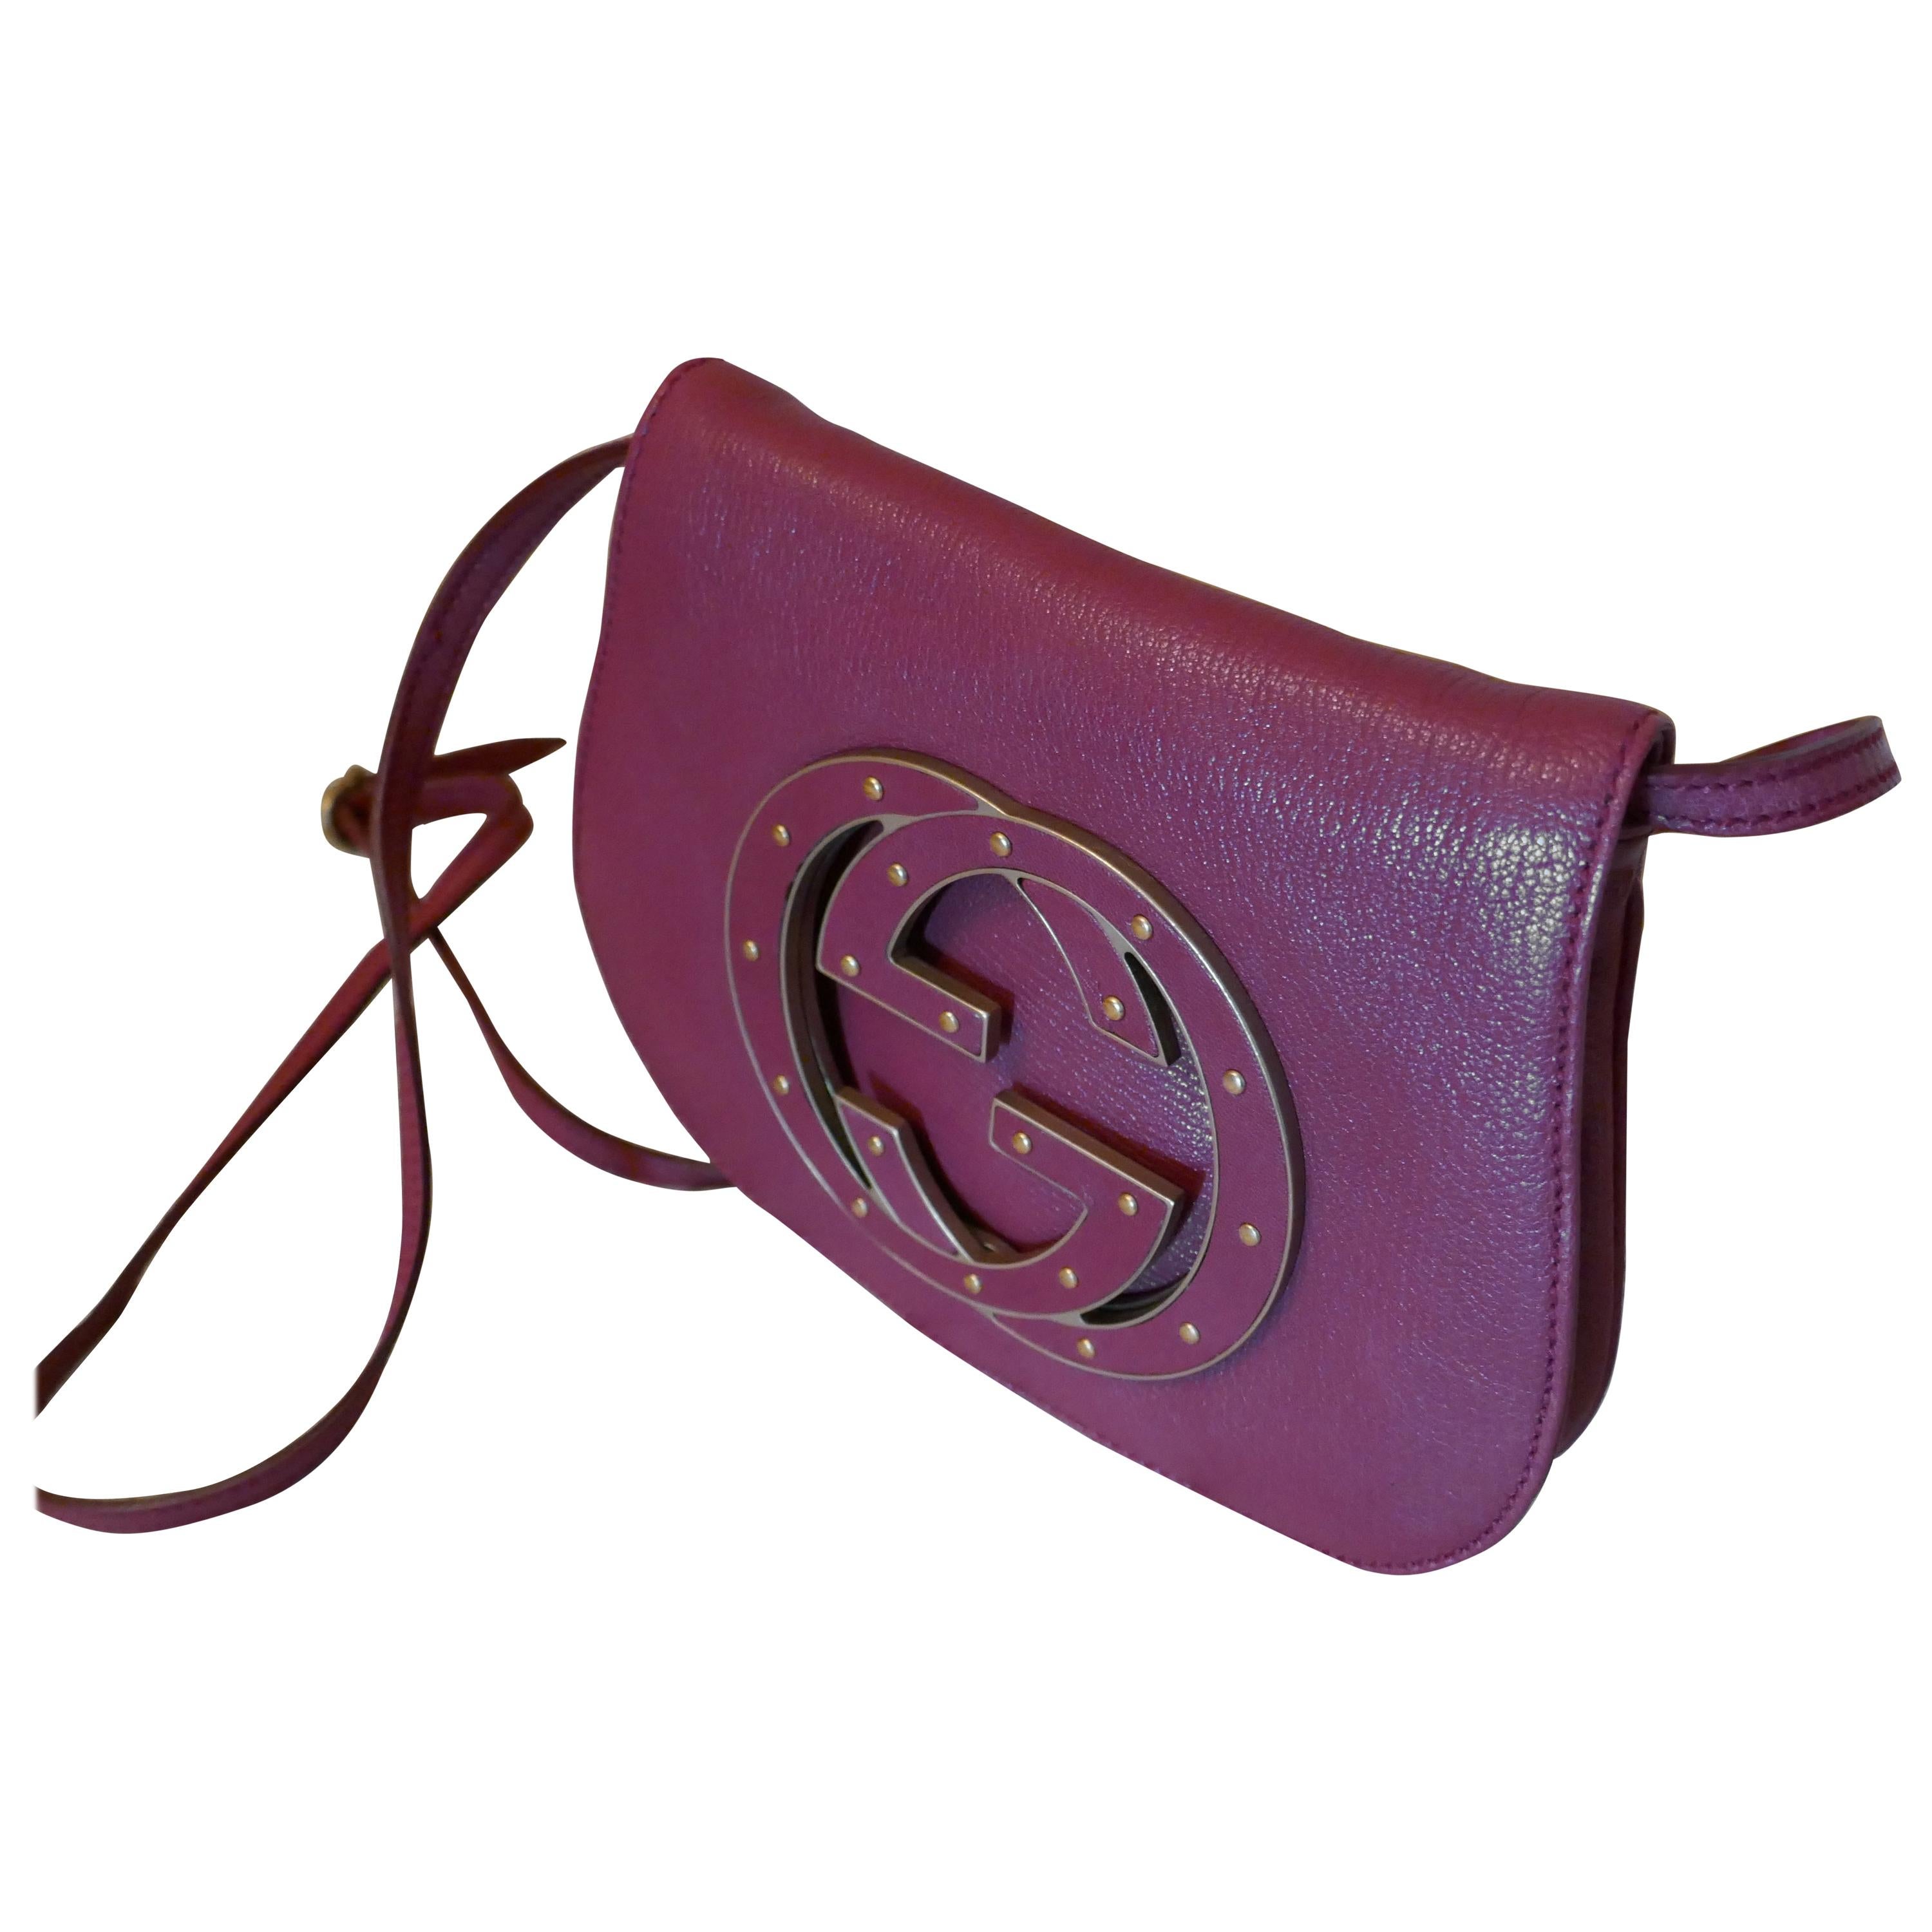 Rare Gucci Soho Pink Leather Messenger Shoulder Bag Purse  